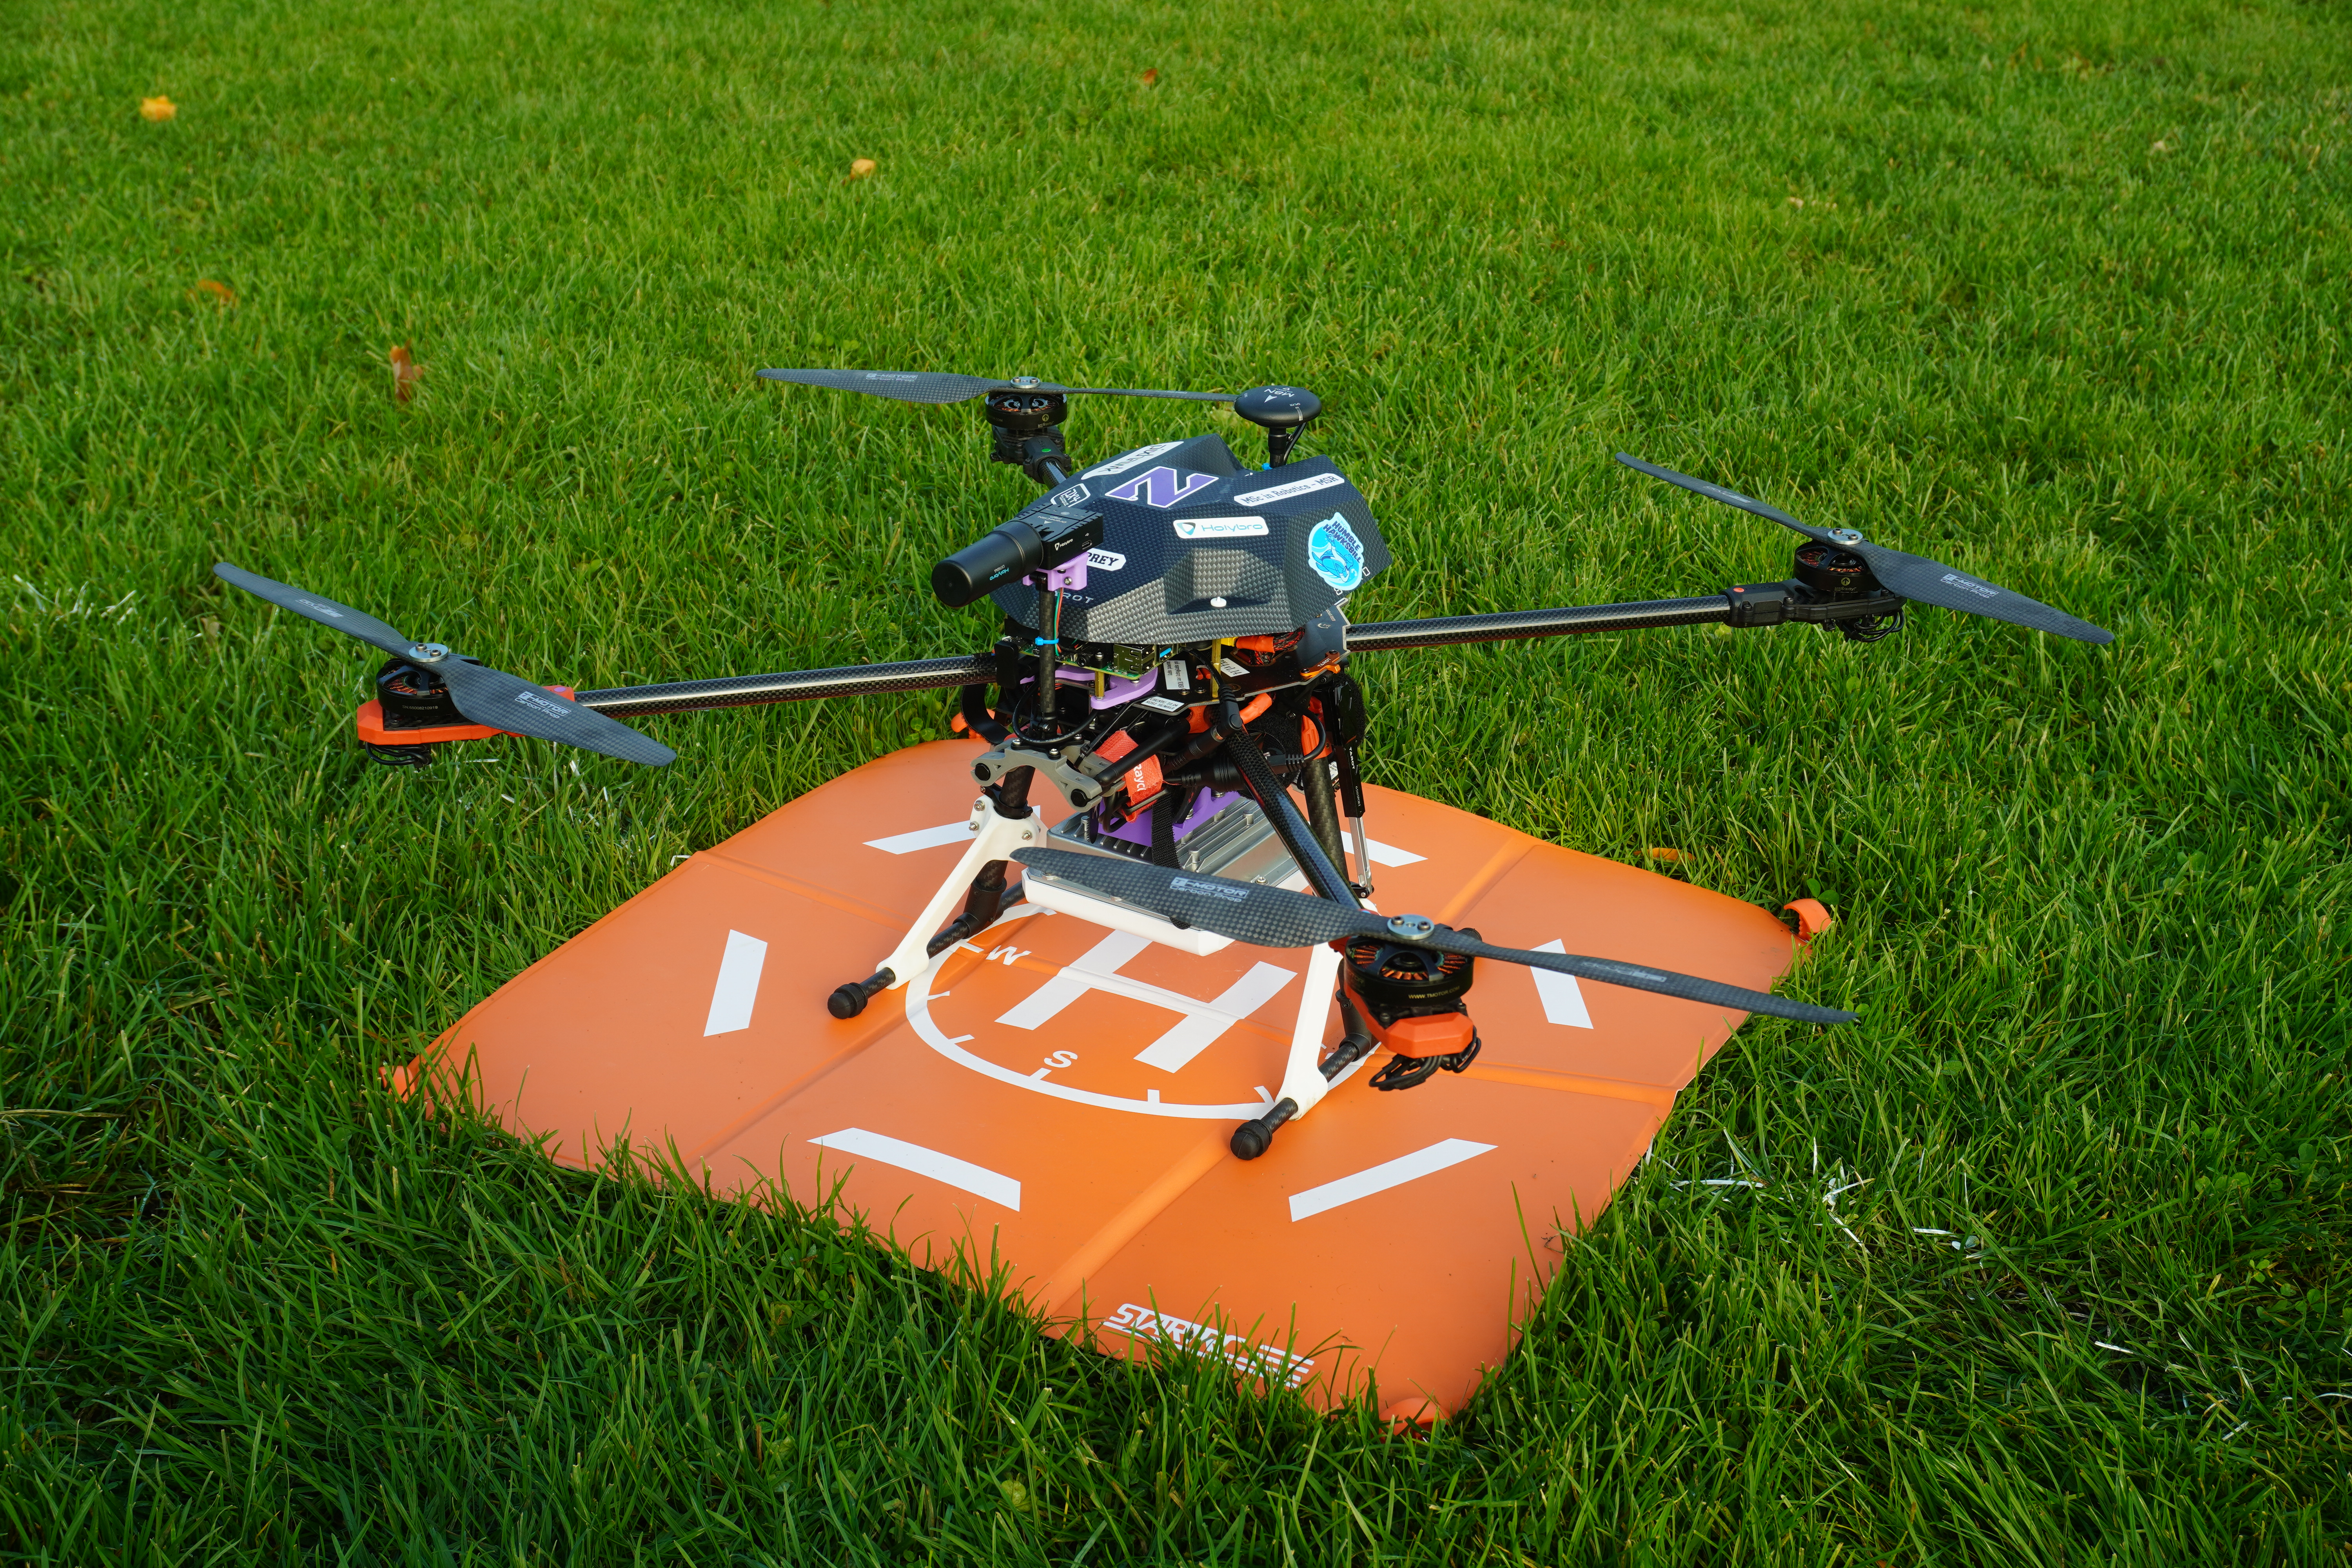 Autonomous Drone built from scratch